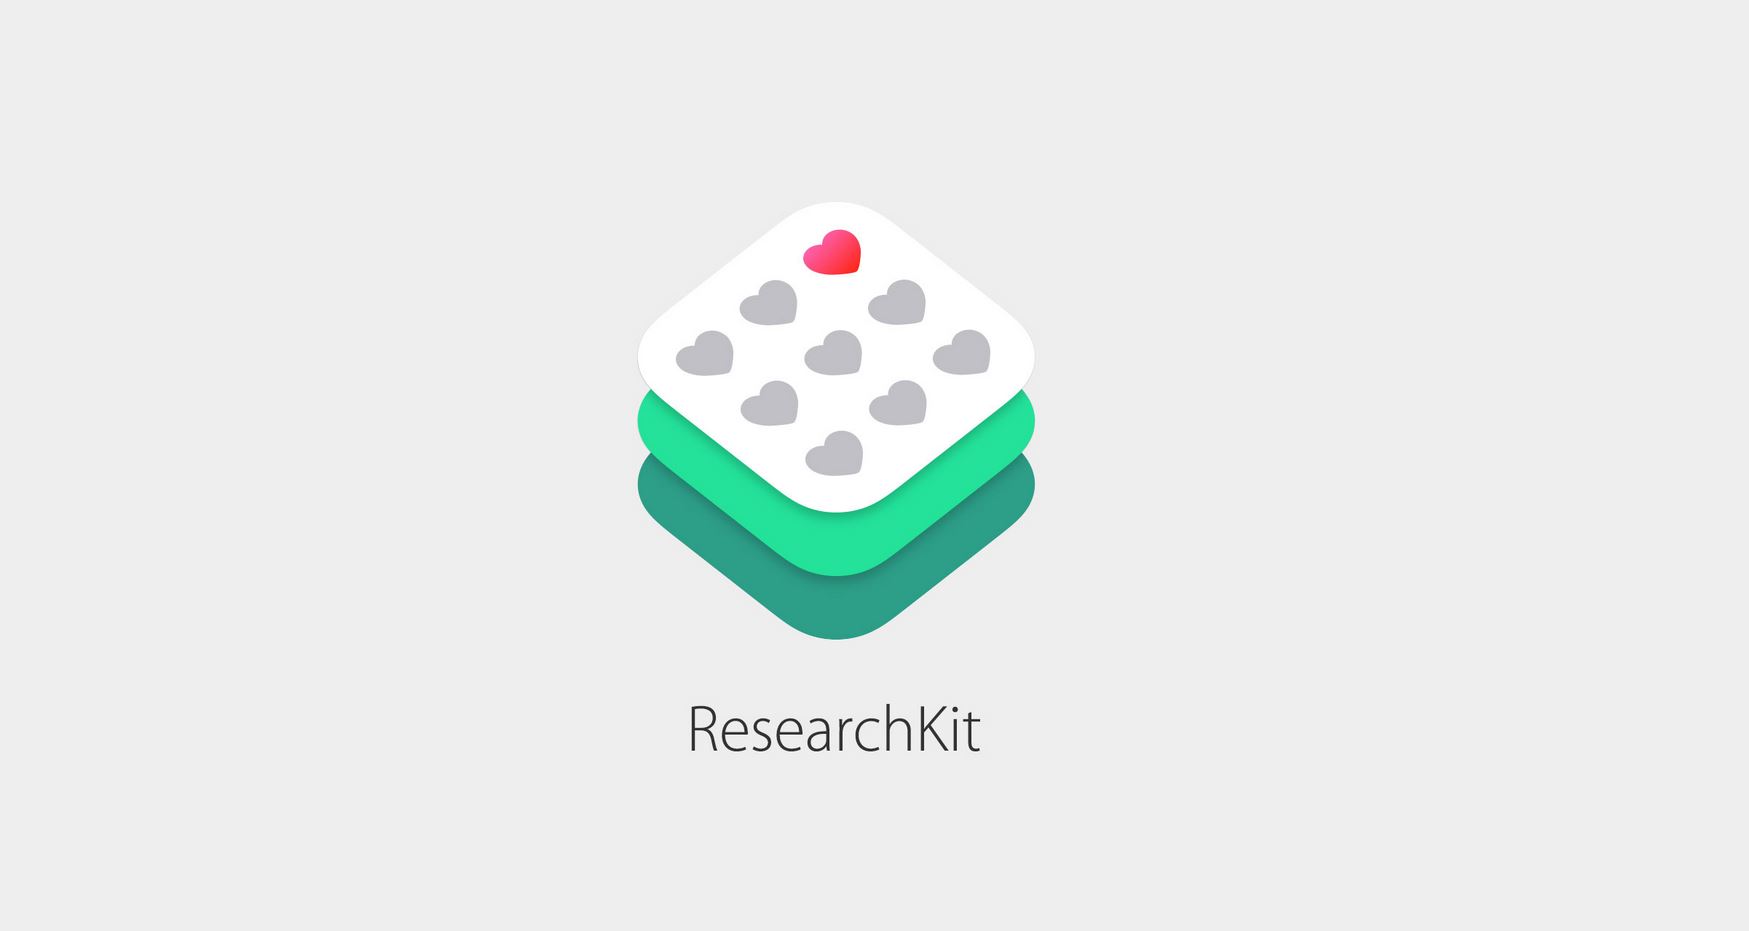 [วิพากษ์] Apple ResearchKit มันคือเครื่องเก็บข้อมูล หาใช่อุปกรณ์ทางการแพทย์ไม่